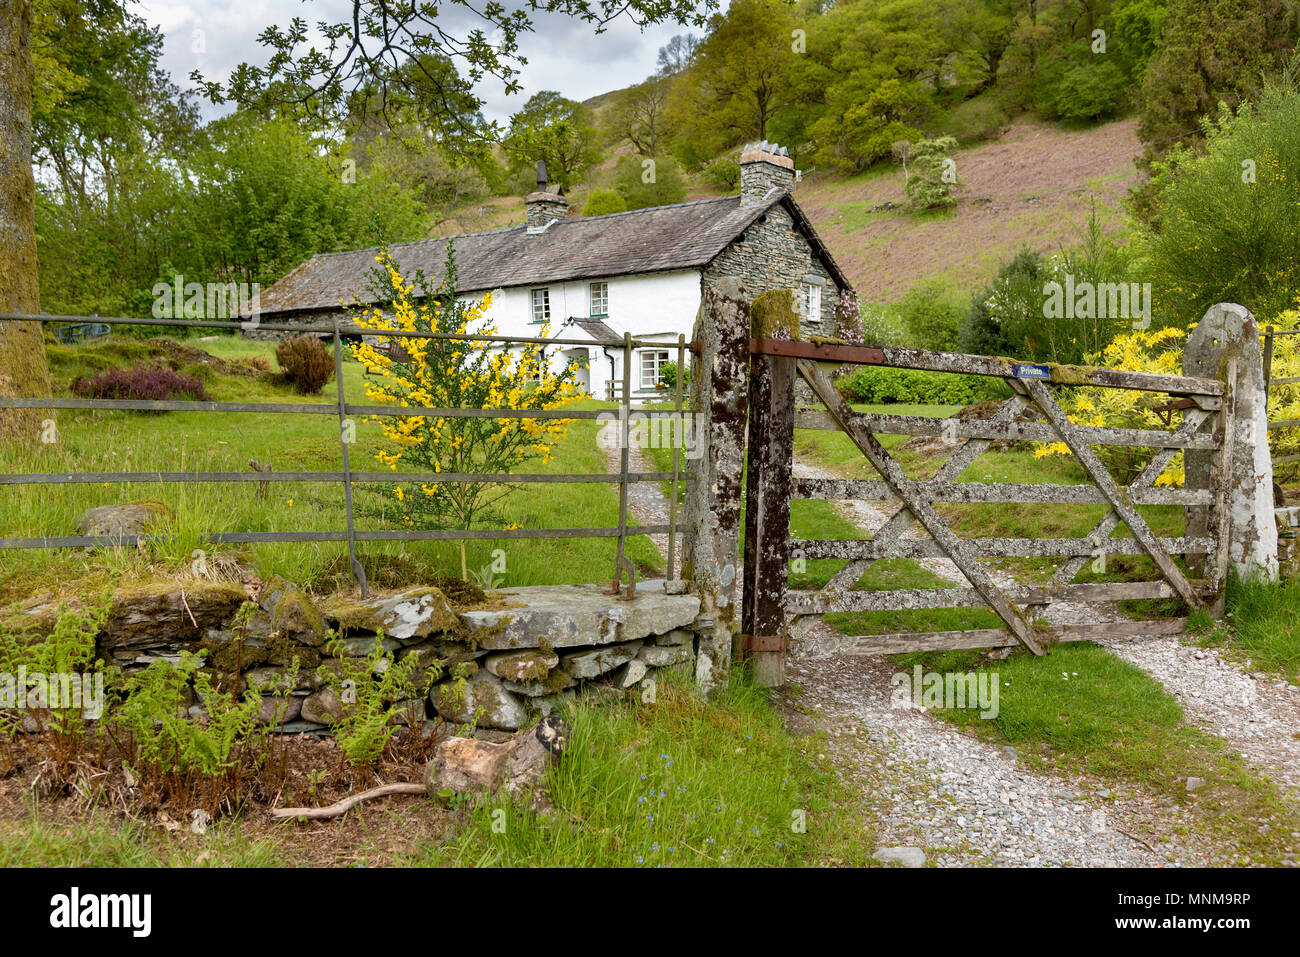 Lakeland country cottage. Stock Photo